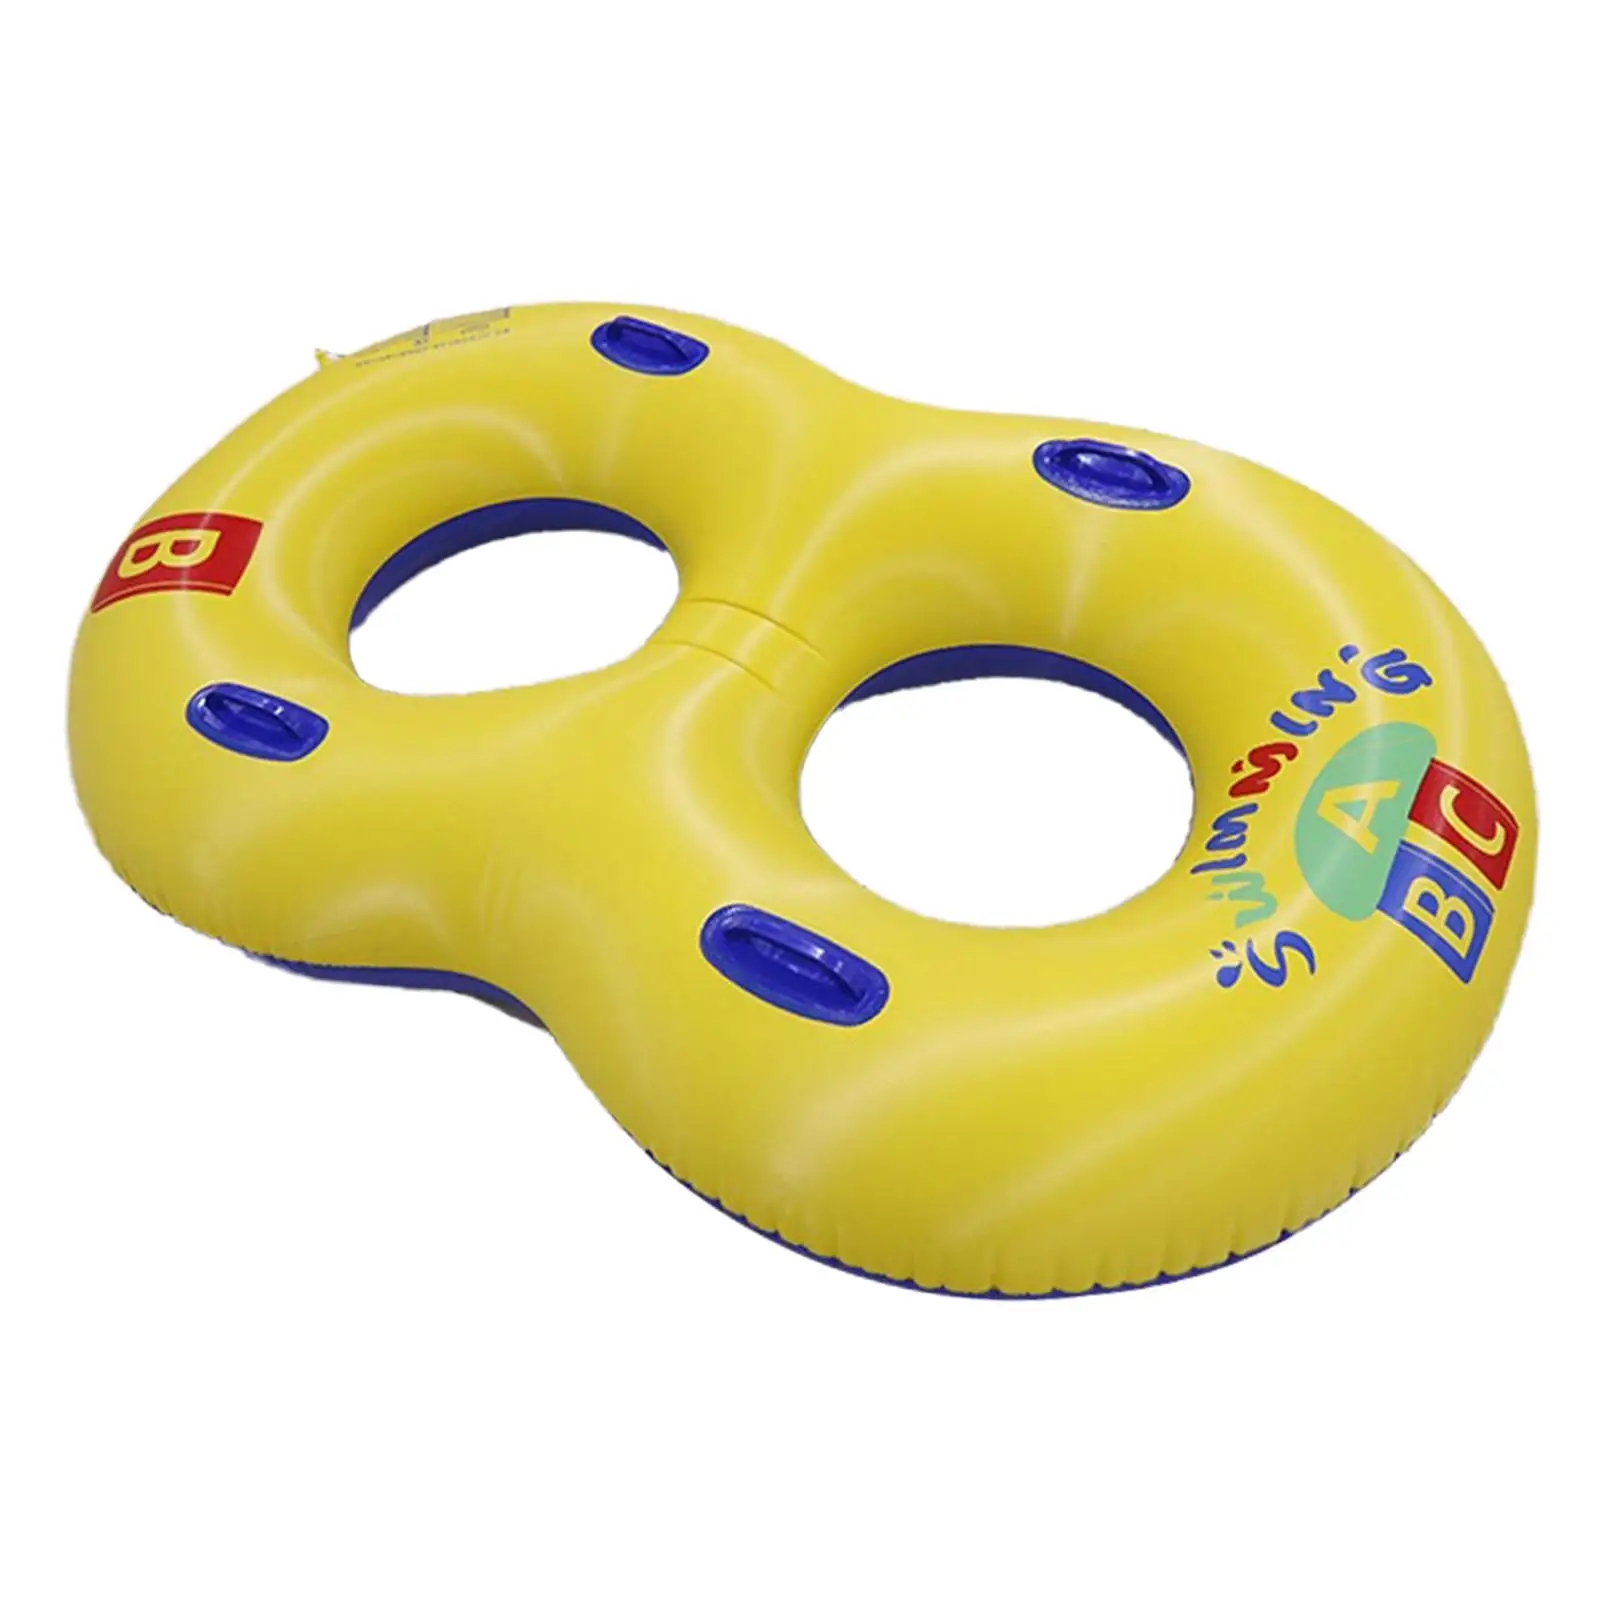 

Надувное плавательное кольцо из ПВХ с ручками, плавательное кольцо, развлекательная игрушка для воды, оборудование для пар и взрослых, плавающая трубка для бассейна, для пляжа и на открытом воздухе